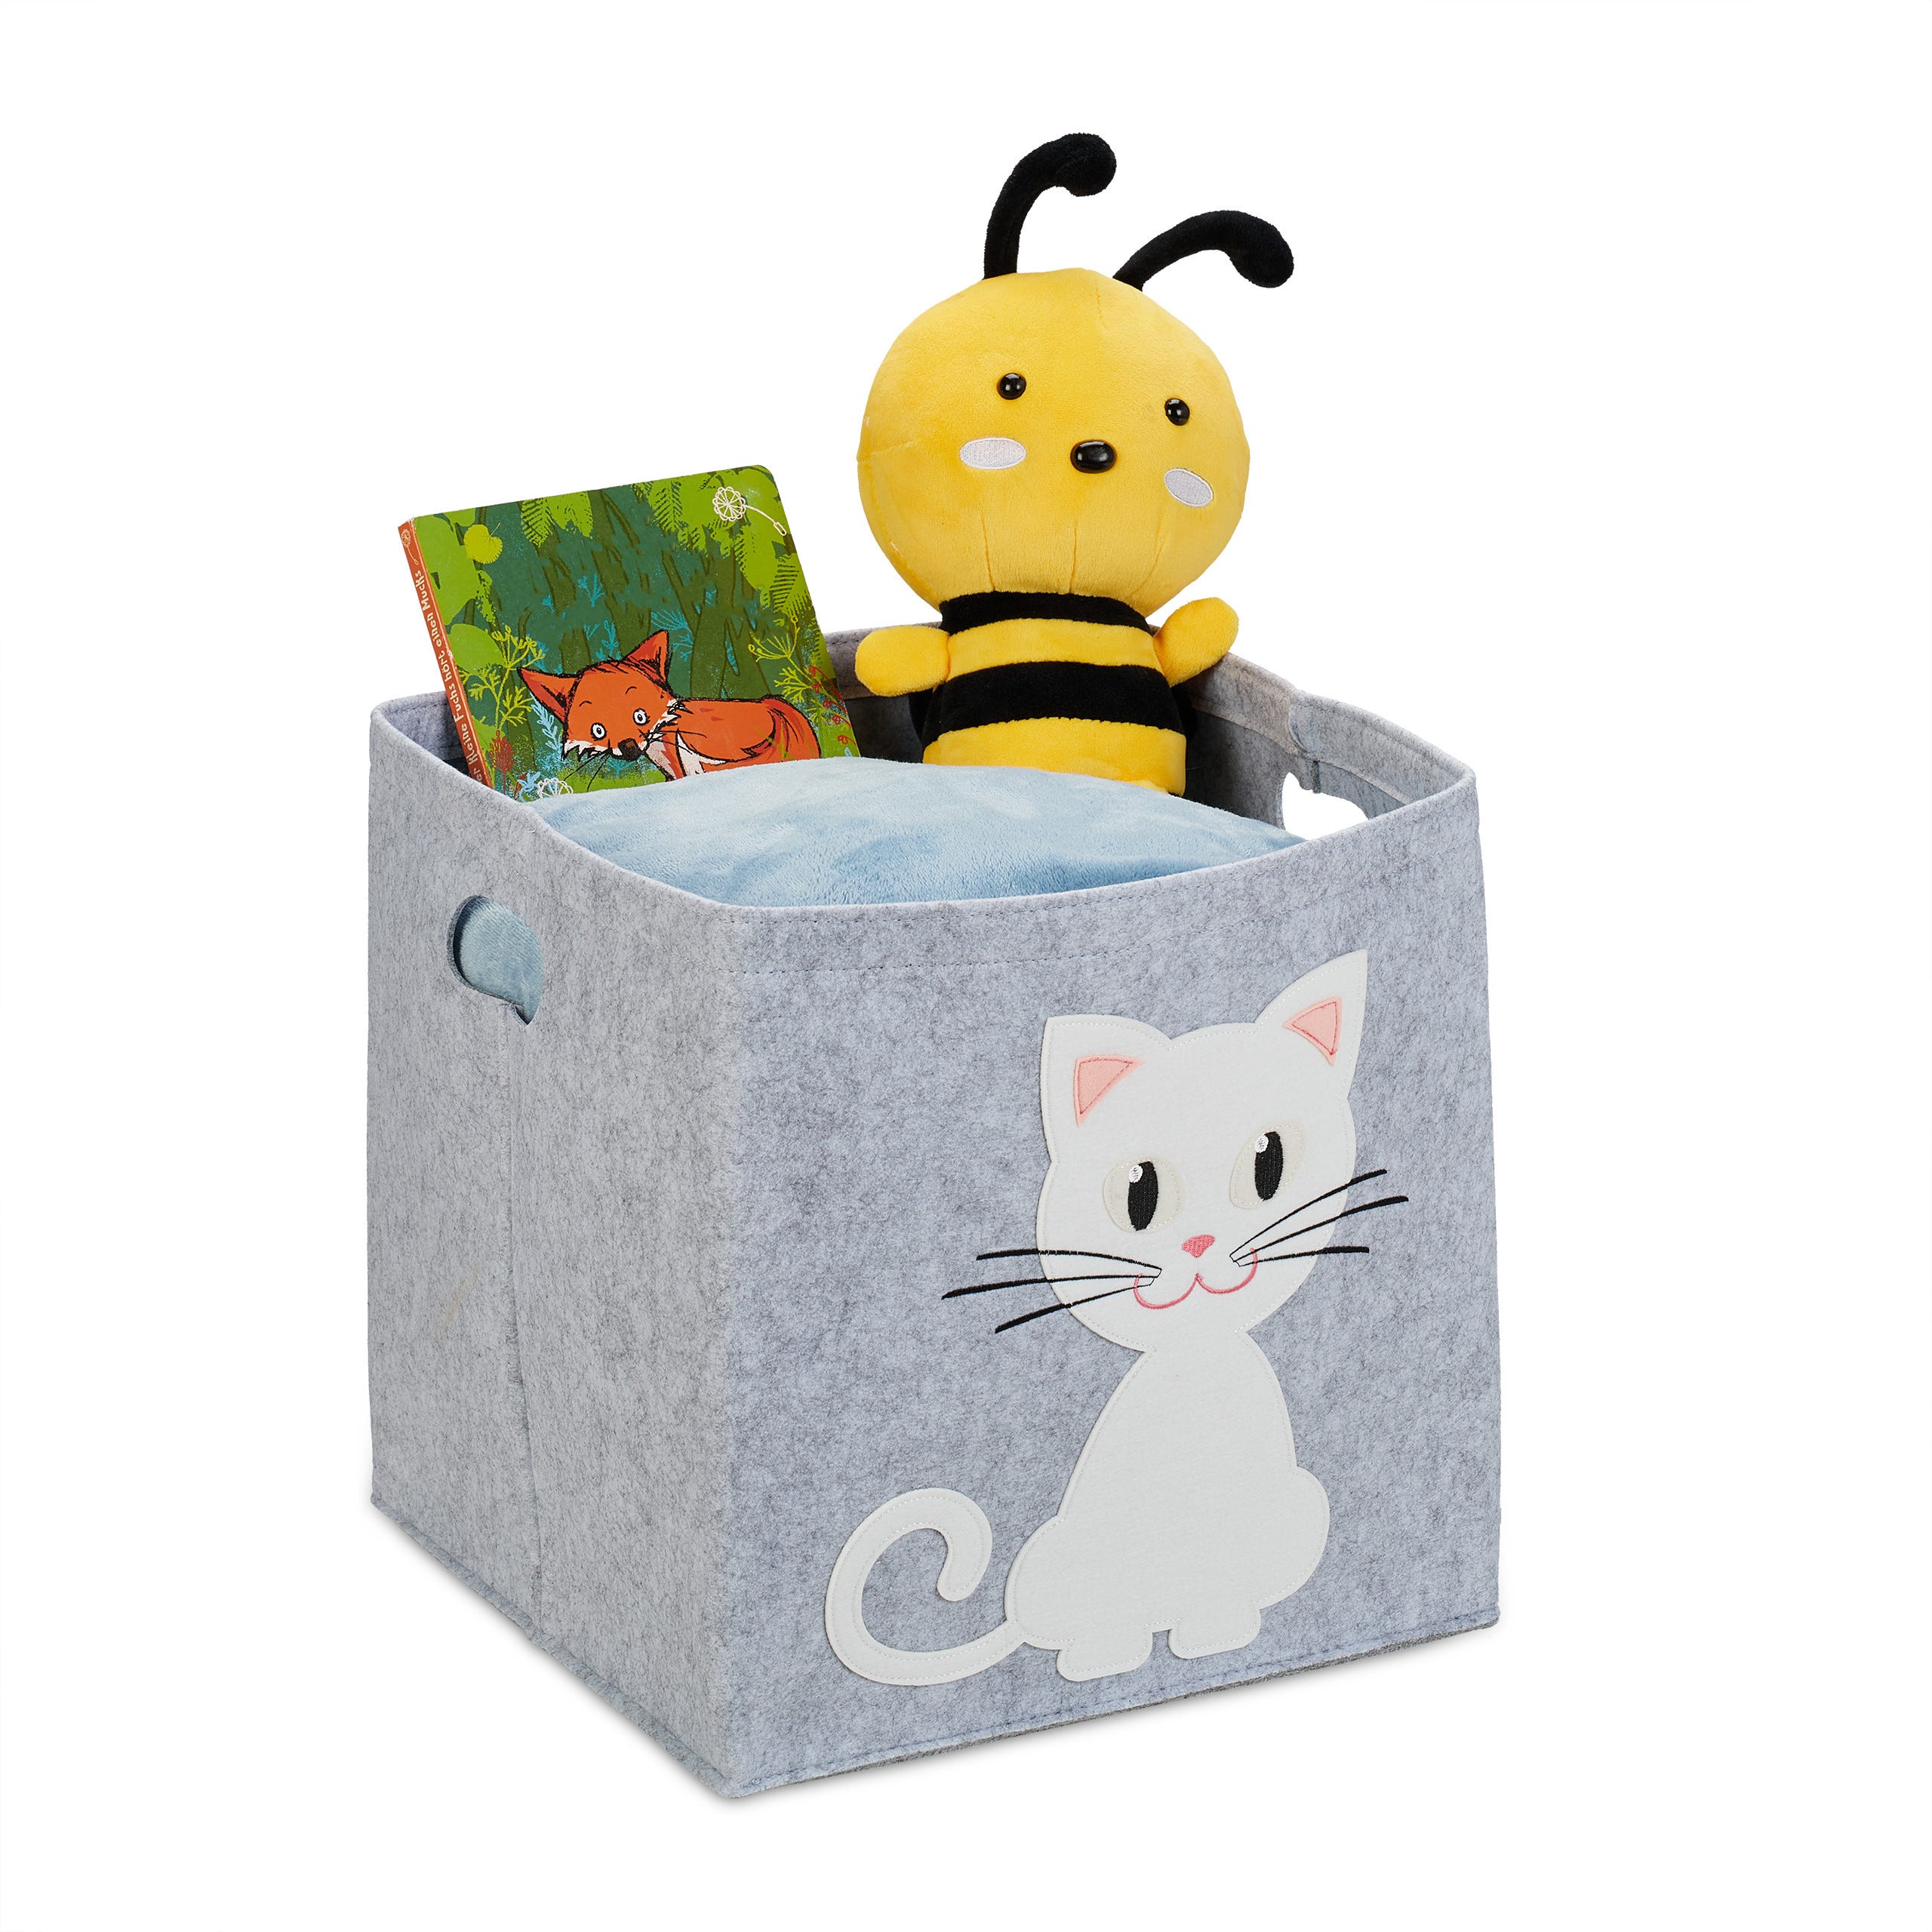 Relaxdays Panier de rangement en feutre, motif chat, caisse tissu pour  enfant, HxLxP : 33x34x32 cm, coffre jouets, gris